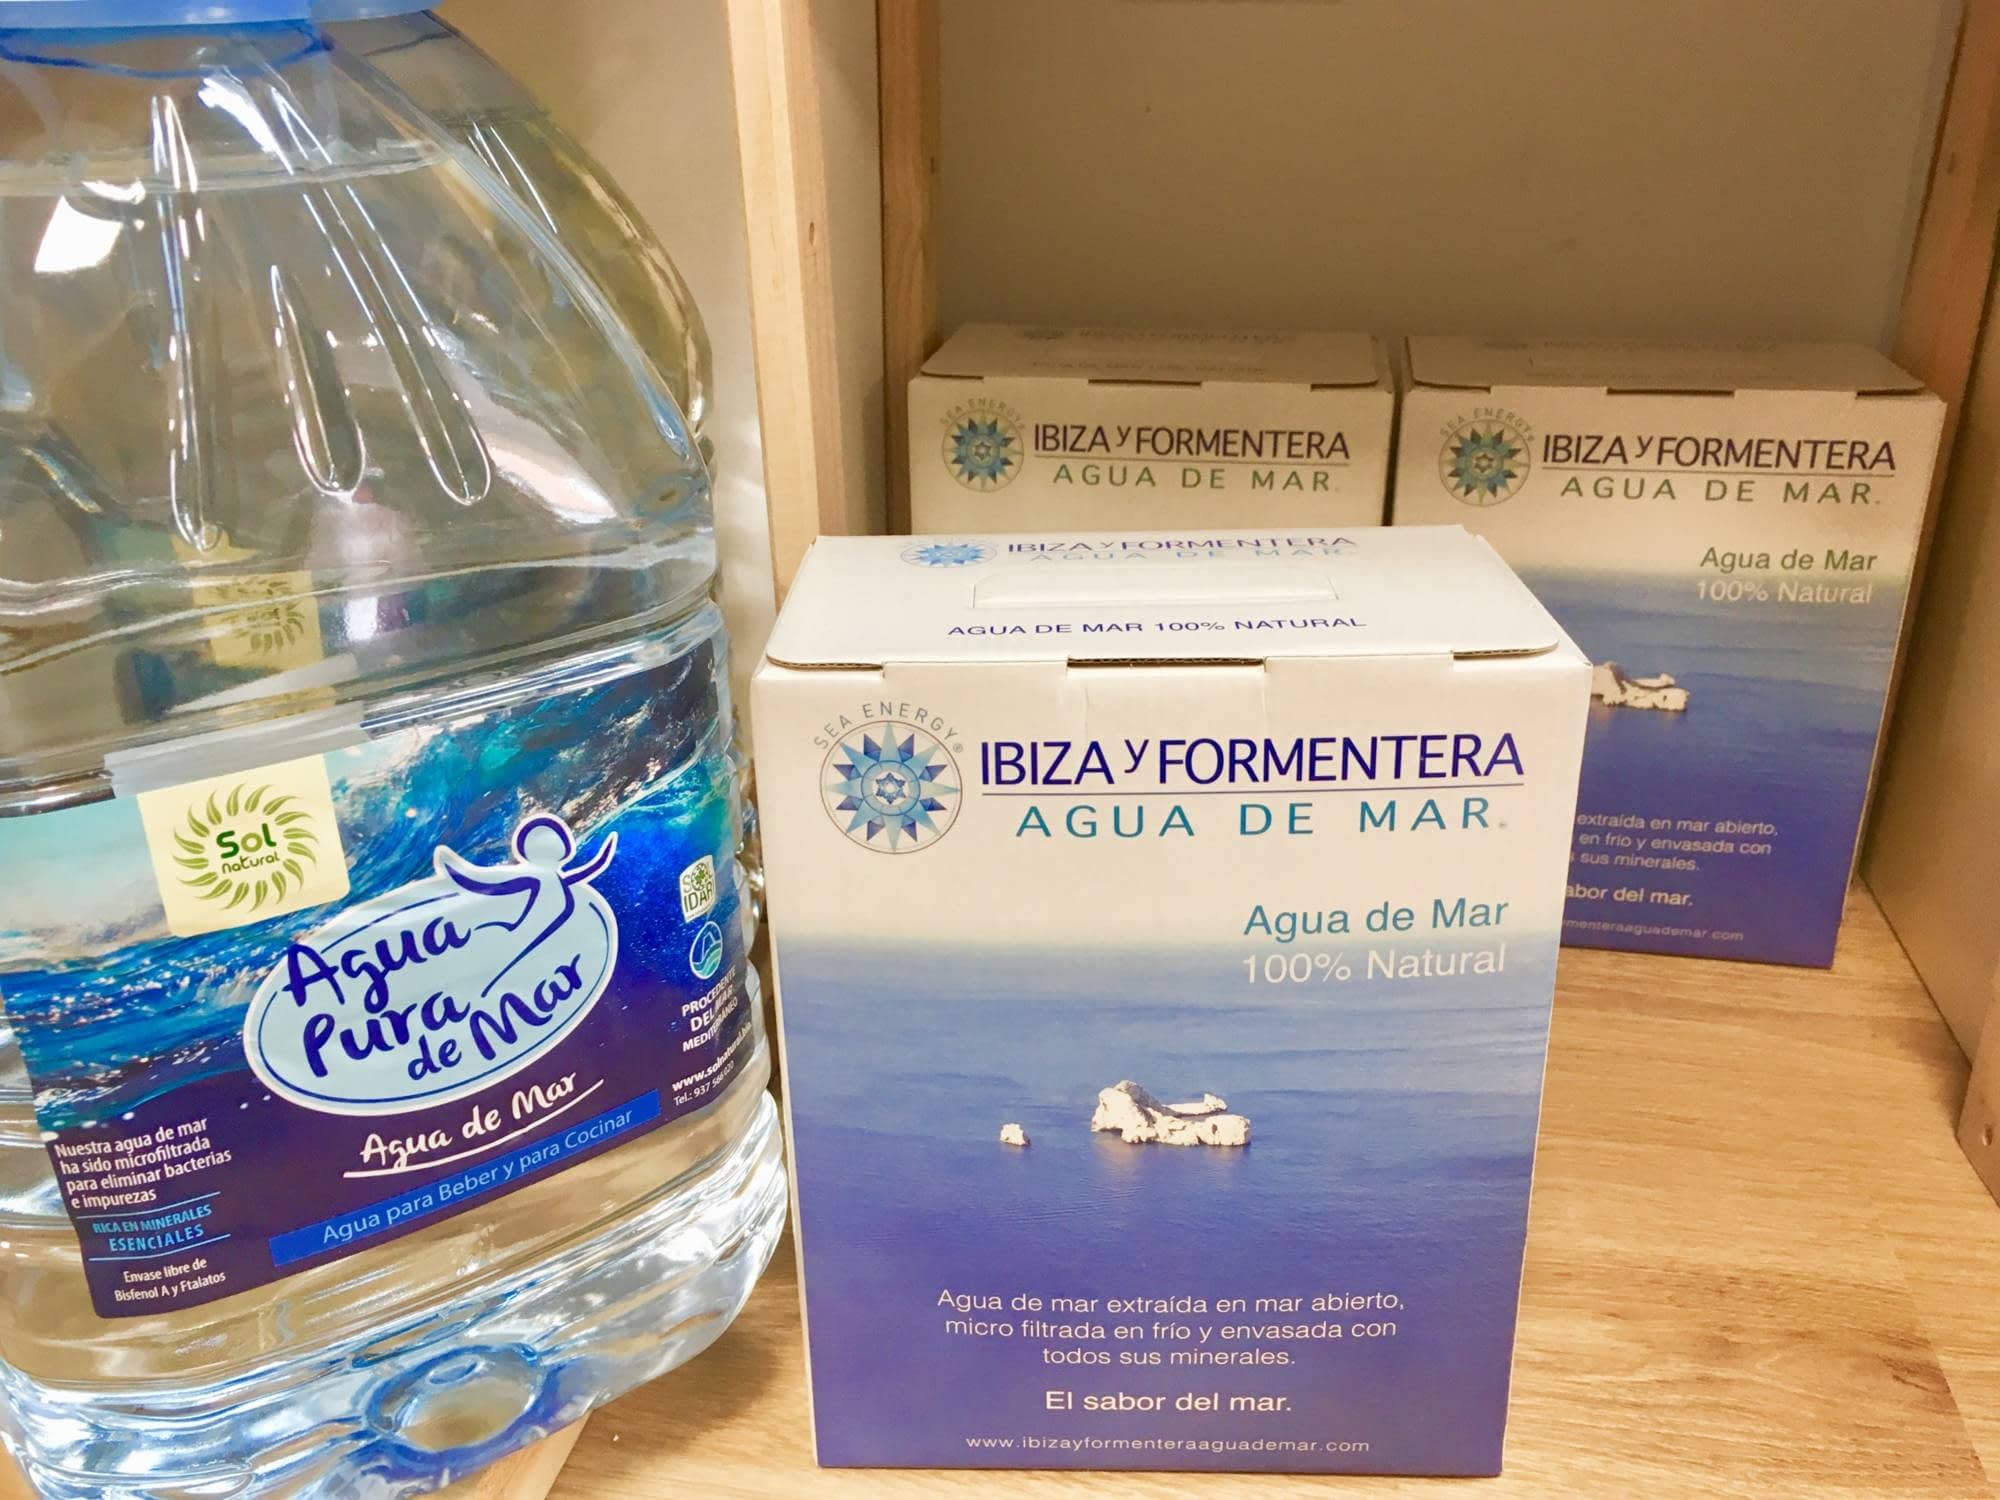 Ibiza y Formentera agua de mar